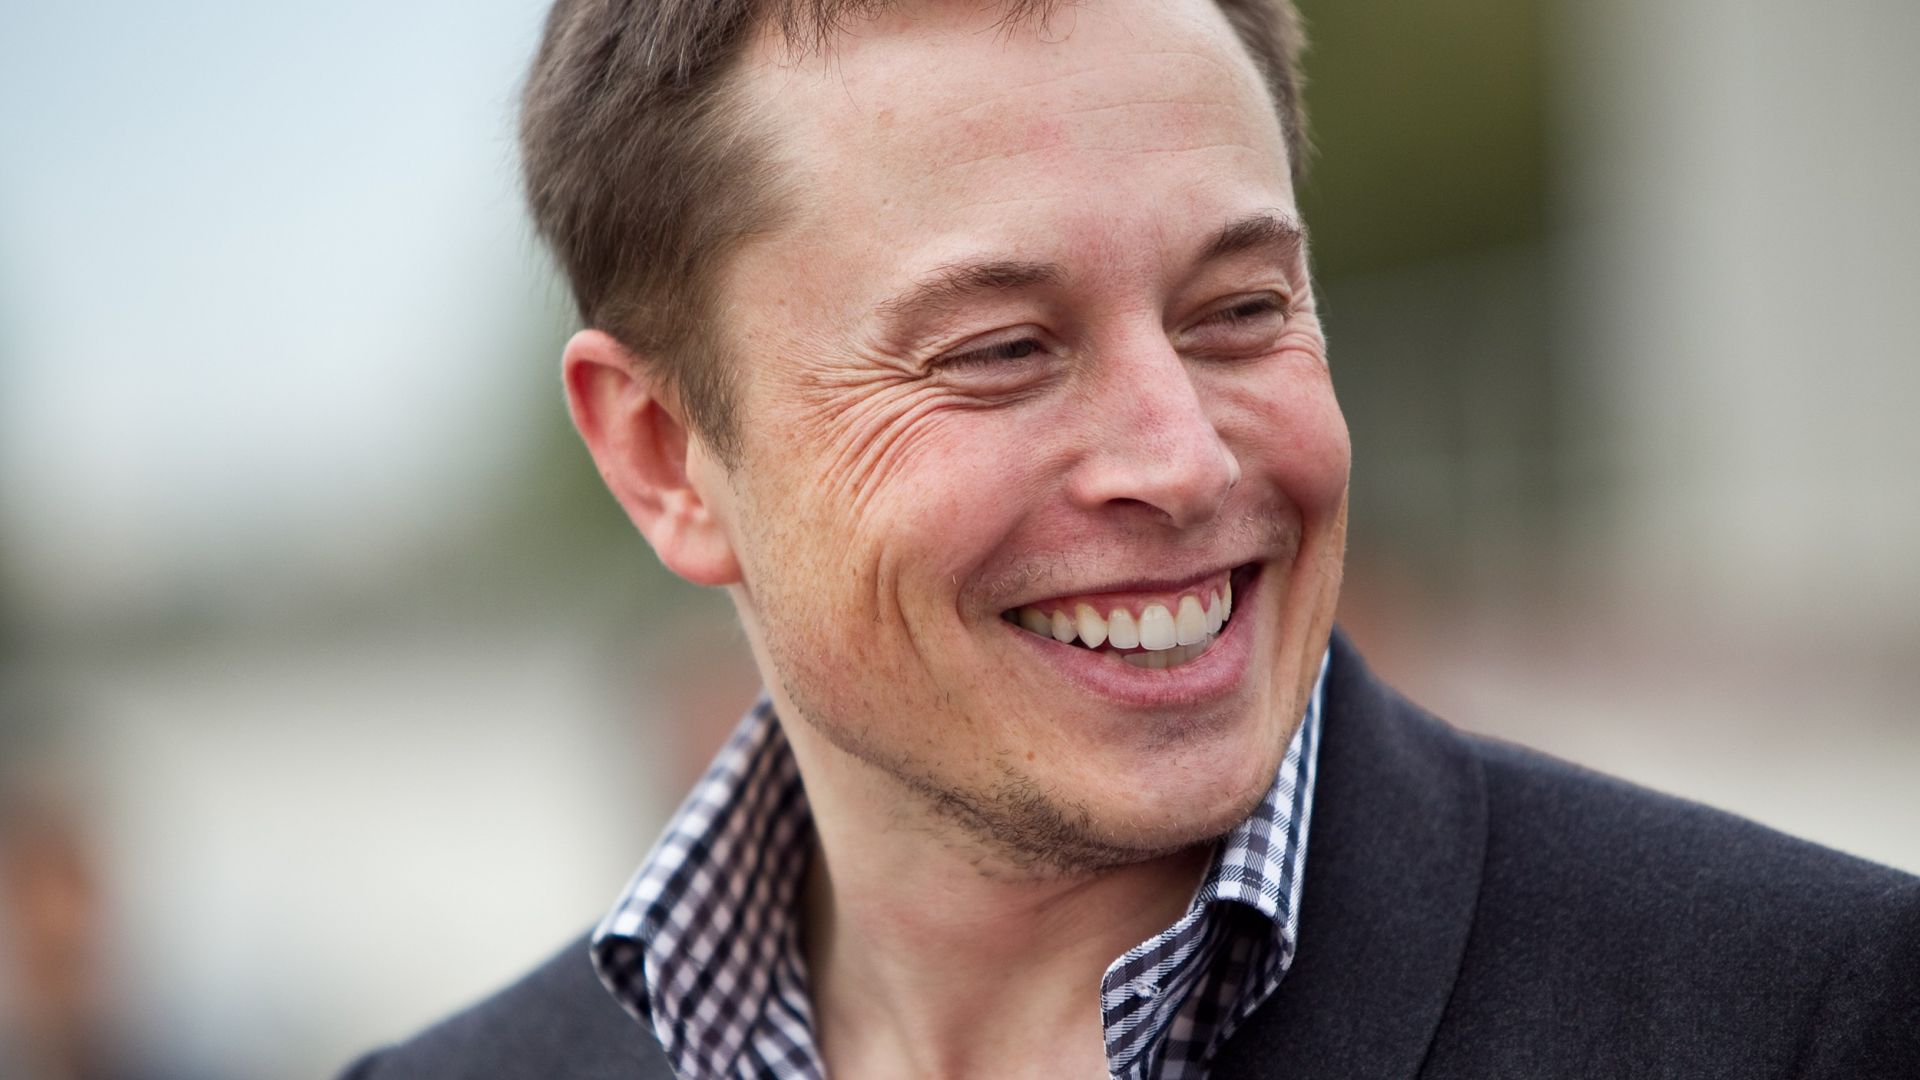 Wallpaper Elon musk's smile face